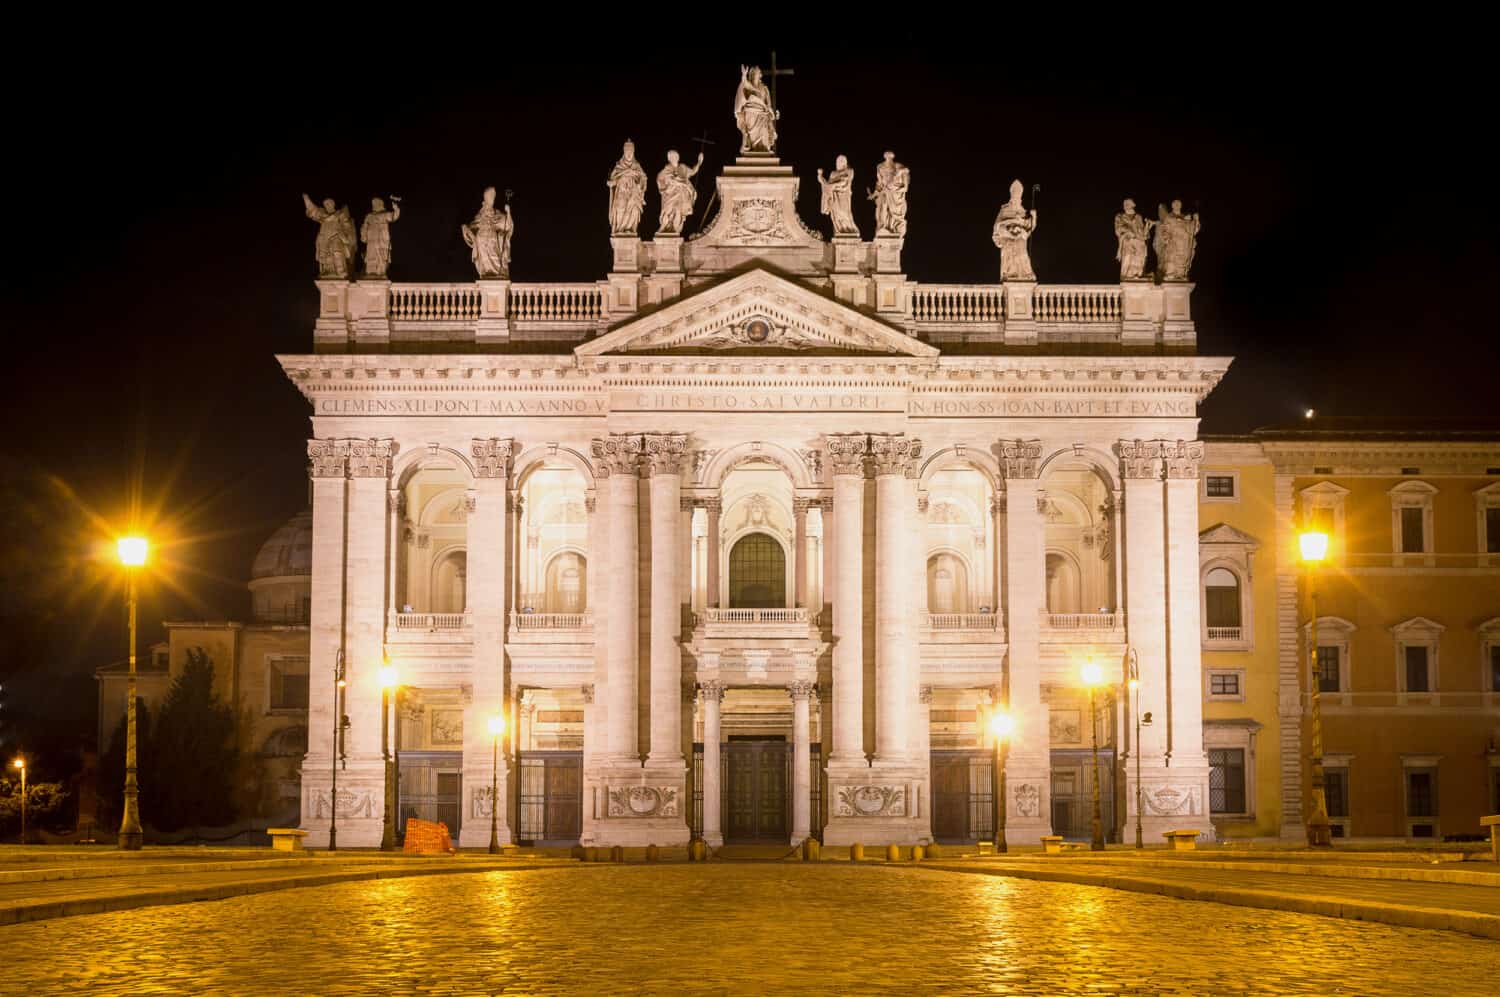 L'arcibasilica papale (o basilica) di San Giovanni in Laterano, a Roma, Italia, illuminata nella notte oscura.  Questa è la chiesa o basilica principale del mondo cattolico, sede vescovile del Papa.